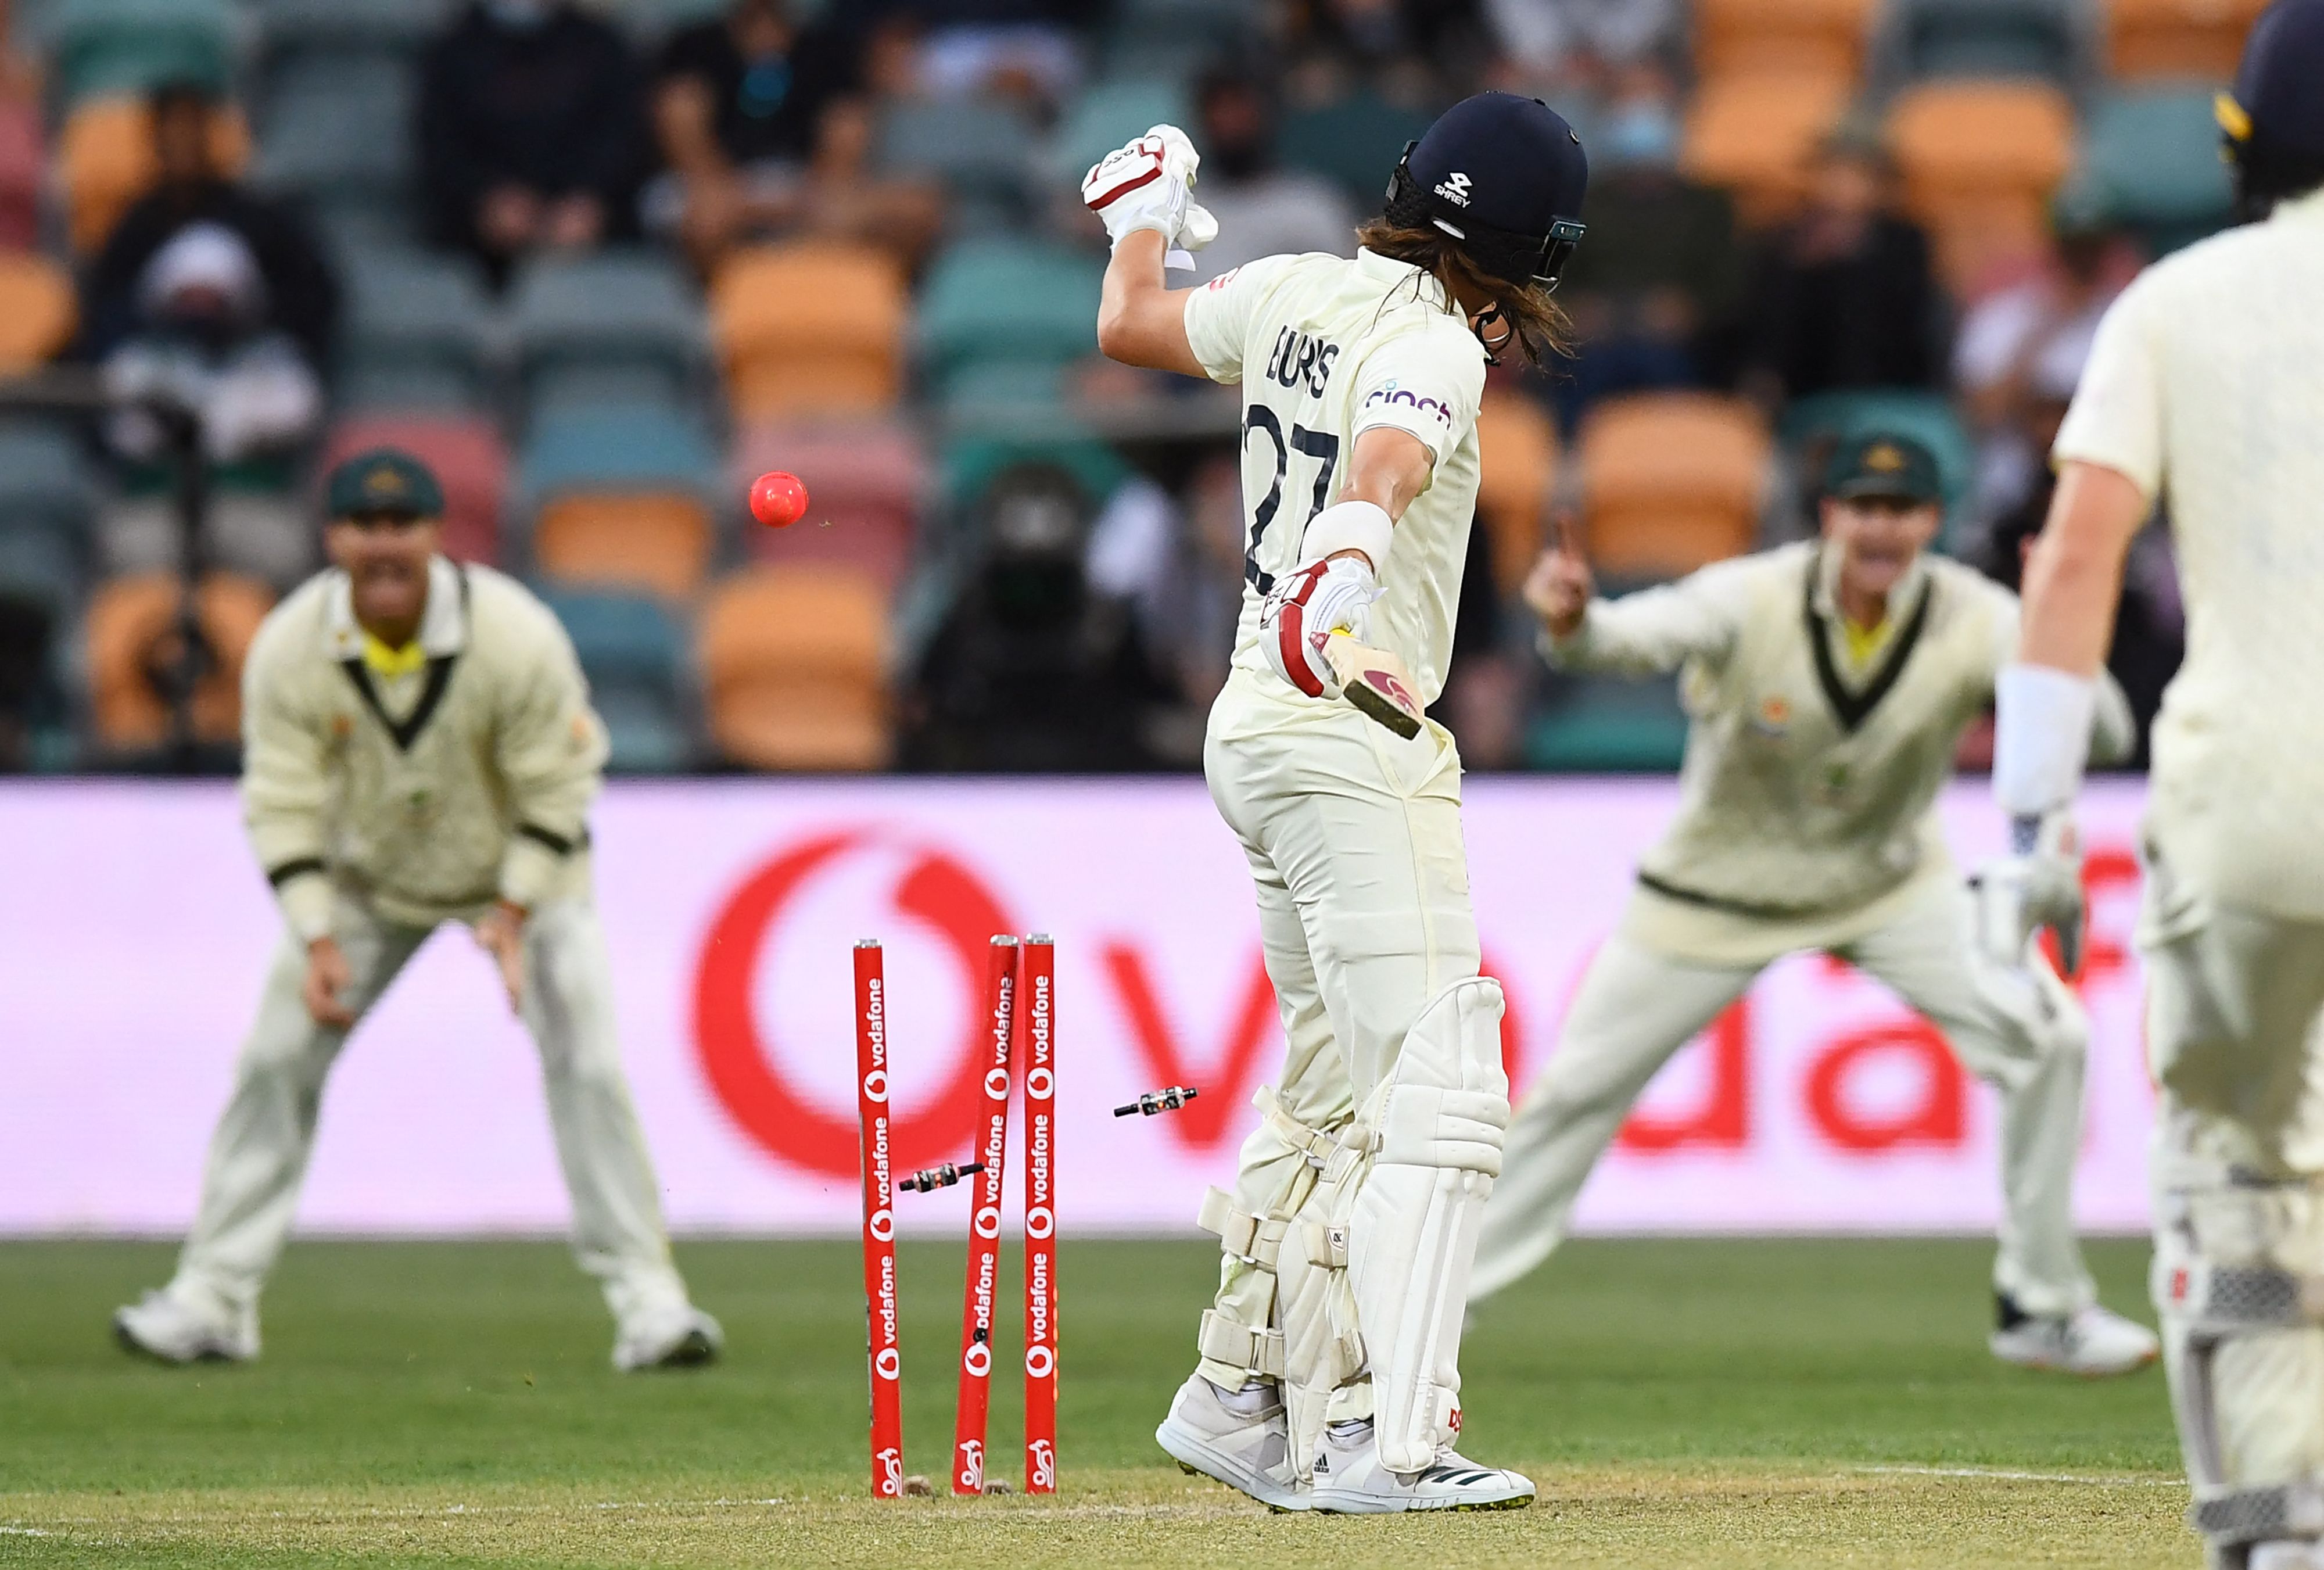 'इंग्लैंड ने डेढ़ घंटे में दस विकेट गंवाए, आप ऐसे मैच नहीं जीत सकते': एशेज हार के बाद भड़के एलेस्टर कुक